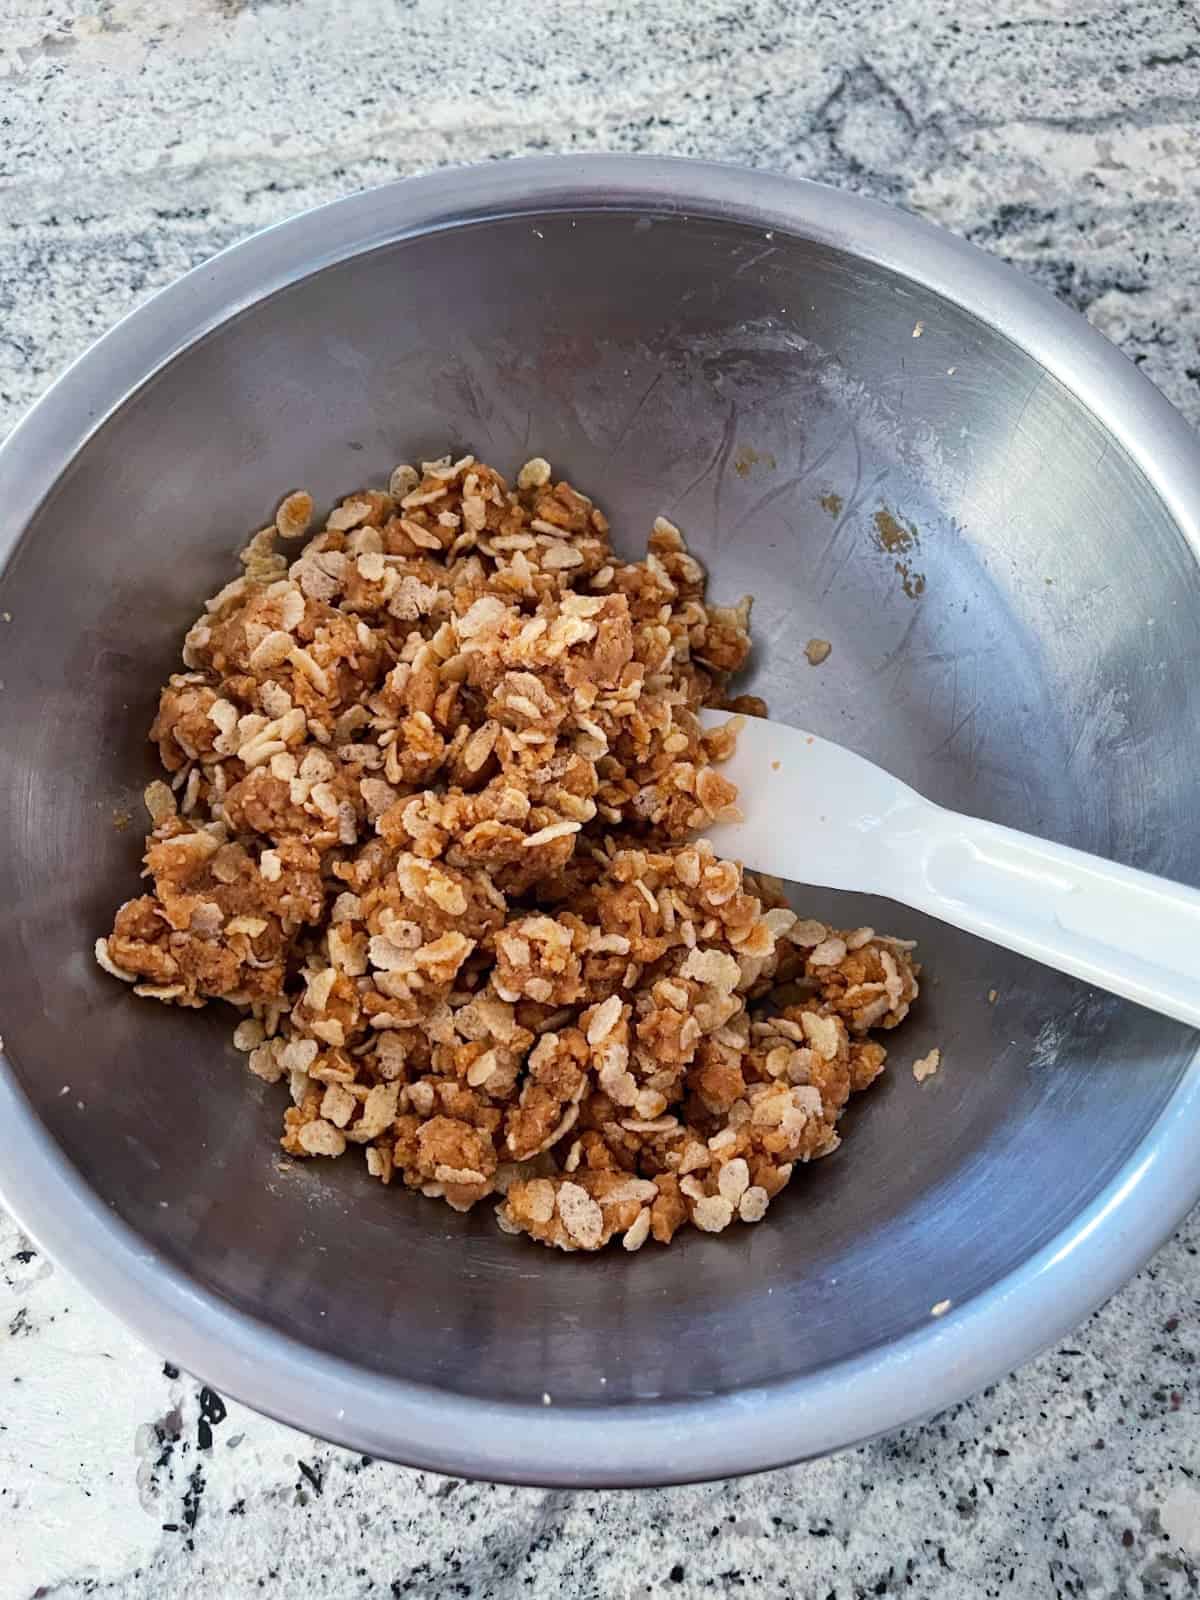 Folding crispy rice cereal into peanut butter bon bon mixture.